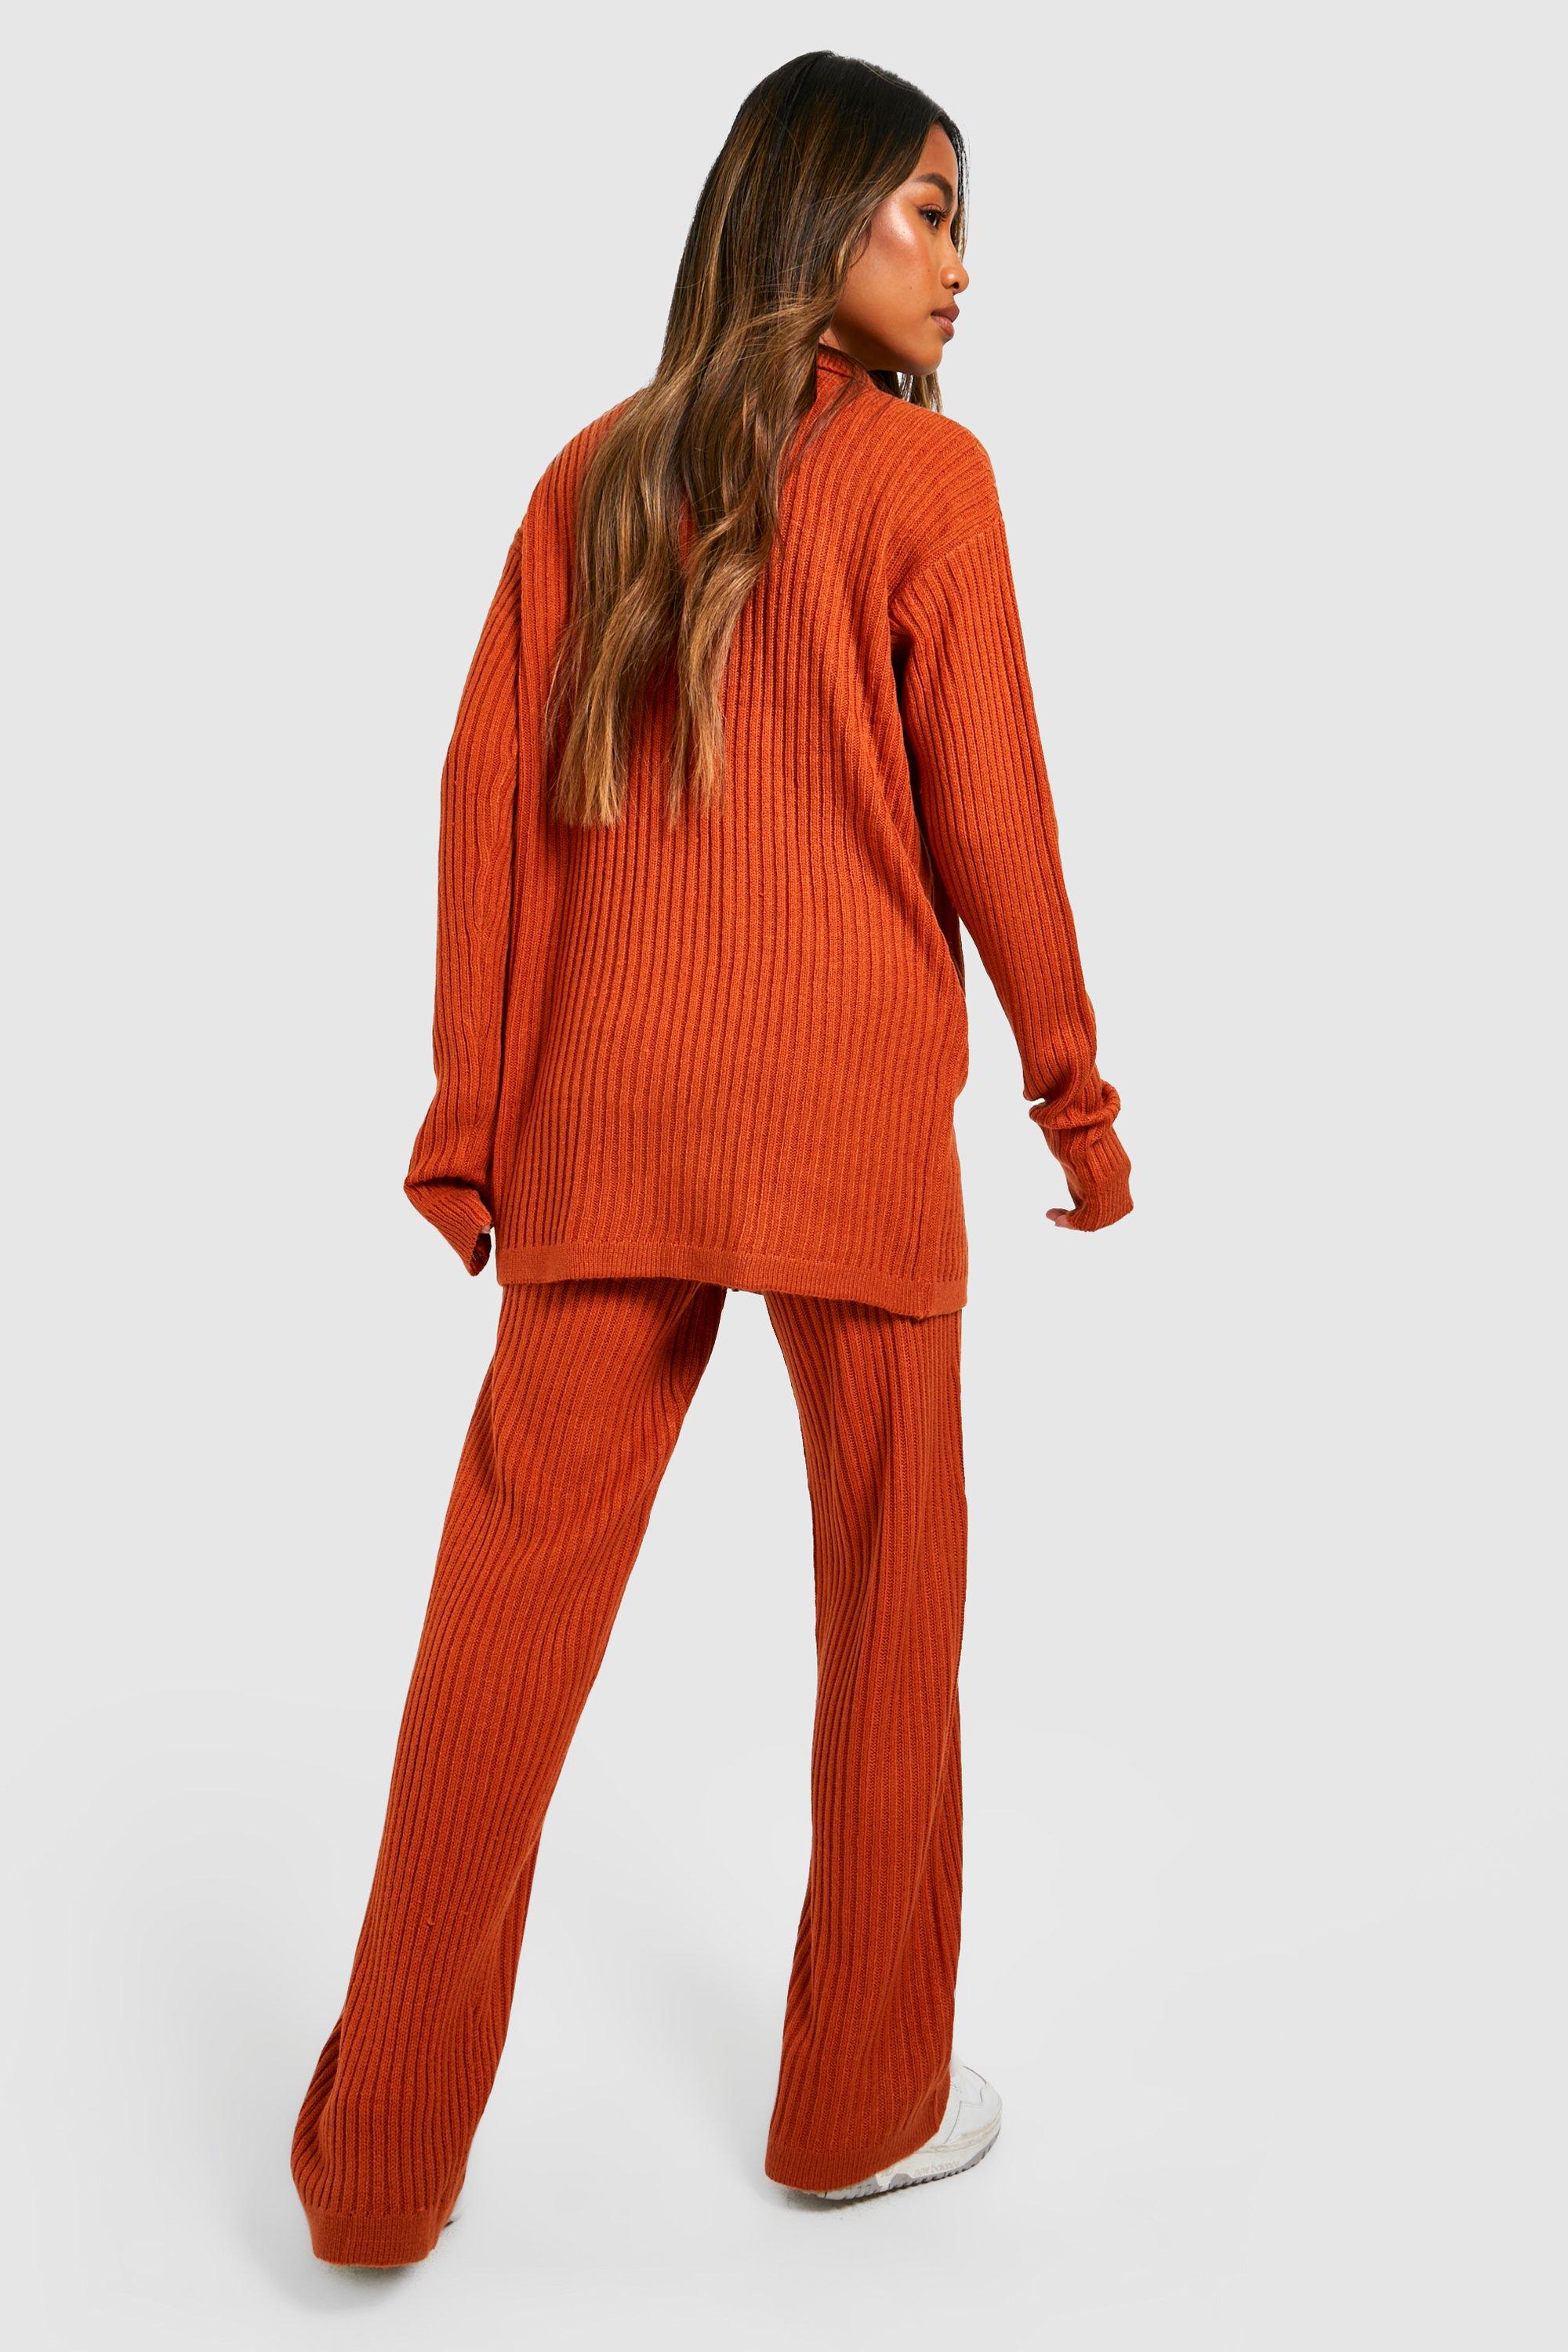 Pantalon femme large en lin orange fabriqué à Lyon sur commande